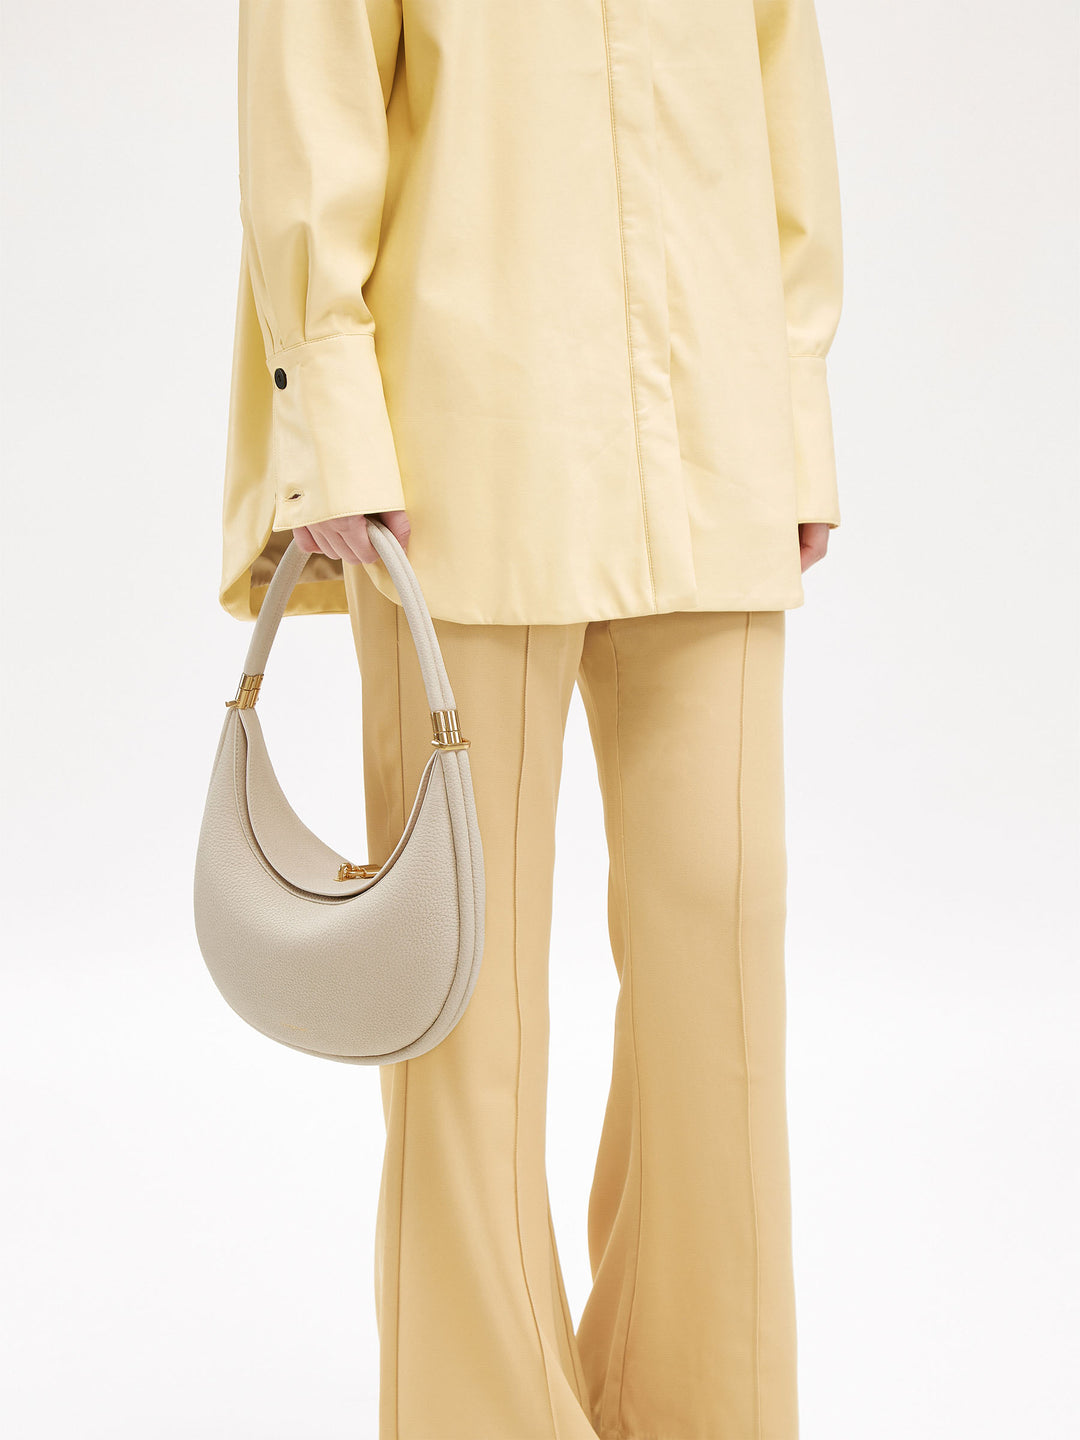 Luna Bag | Ivory Cowhide Curved Shoulder Bag | Songmont